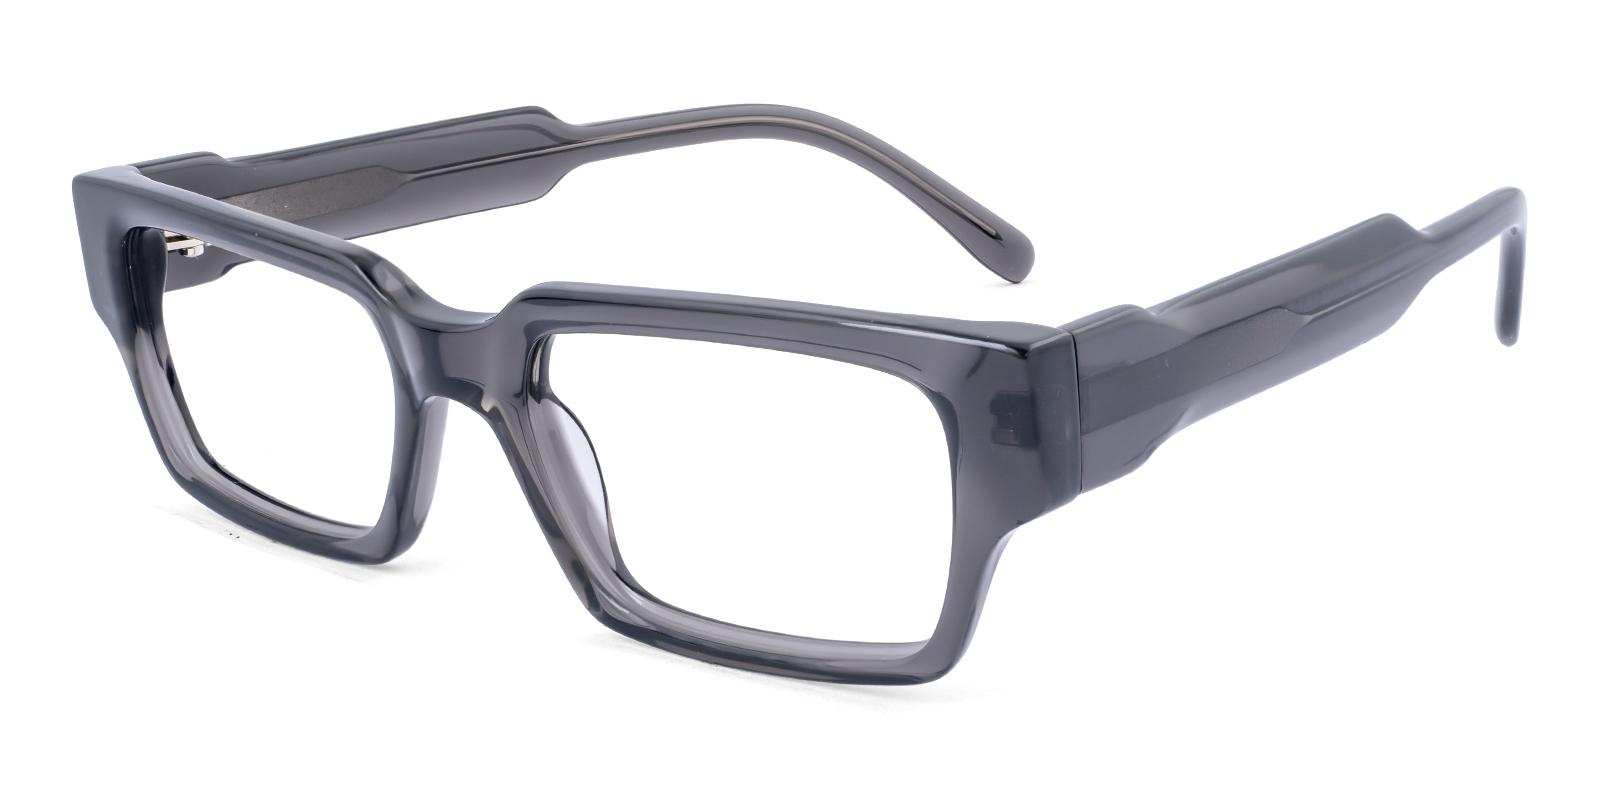 Stoop Gray Acetate Eyeglasses , UniversalBridgeFit Frames from ABBE Glasses